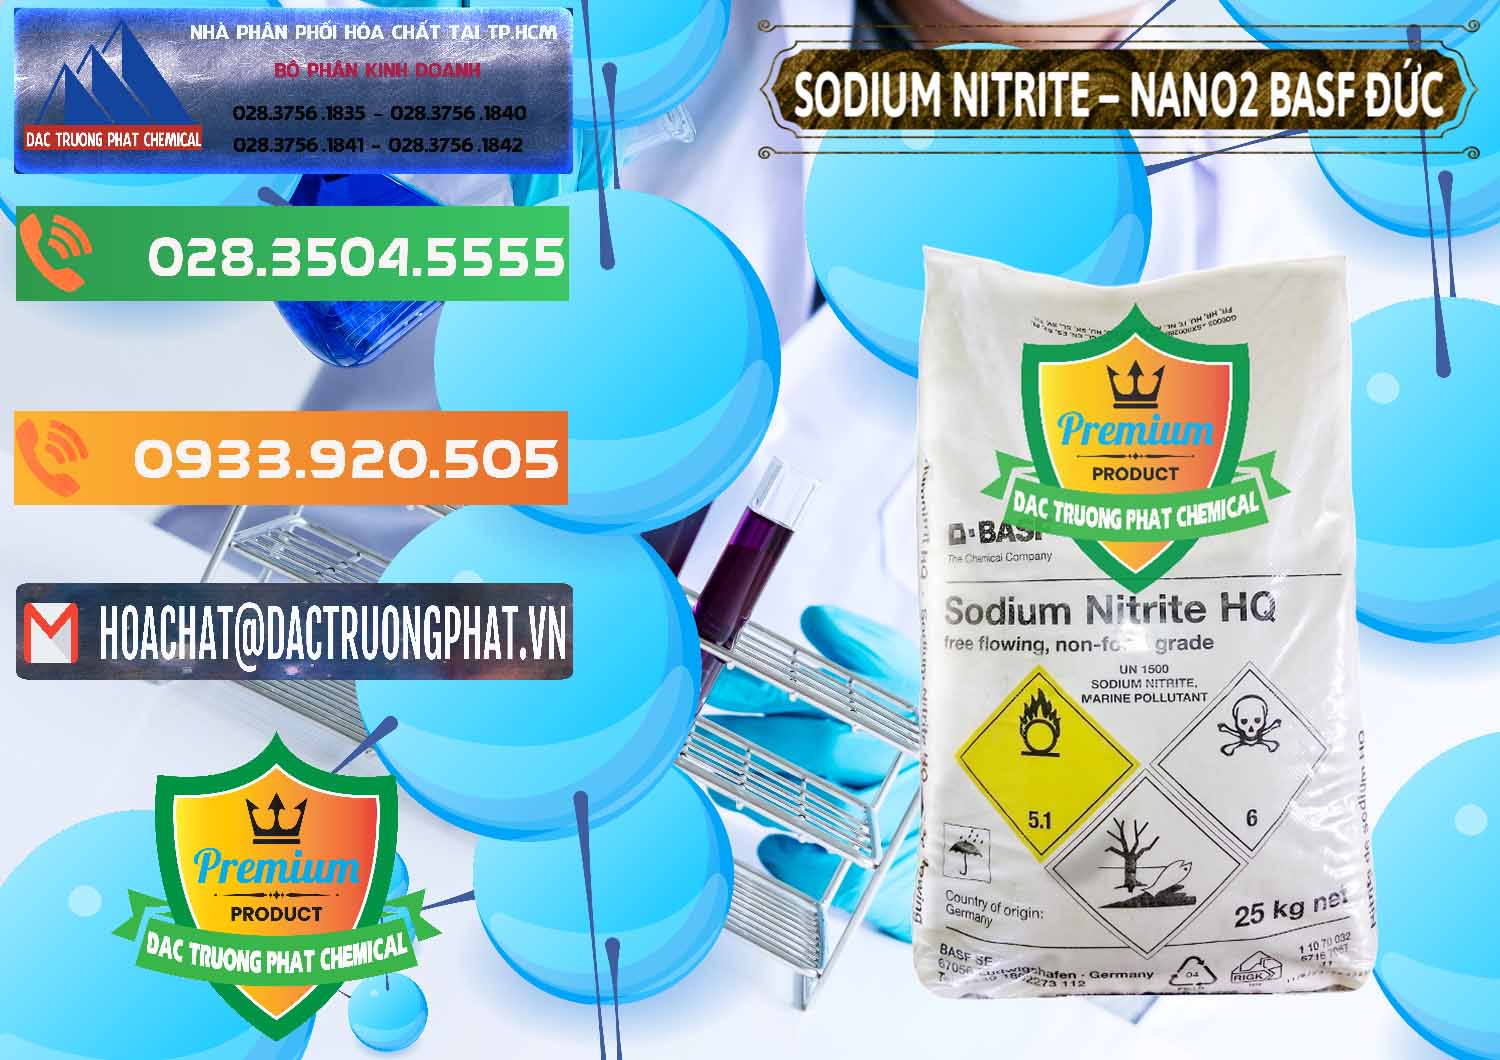 Đơn vị chuyên bán ( cung cấp ) Sodium Nitrite - NANO2 Đức BASF Germany - 0148 - Nơi phân phối & cung cấp hóa chất tại TP.HCM - hoachatxulynuoc.com.vn